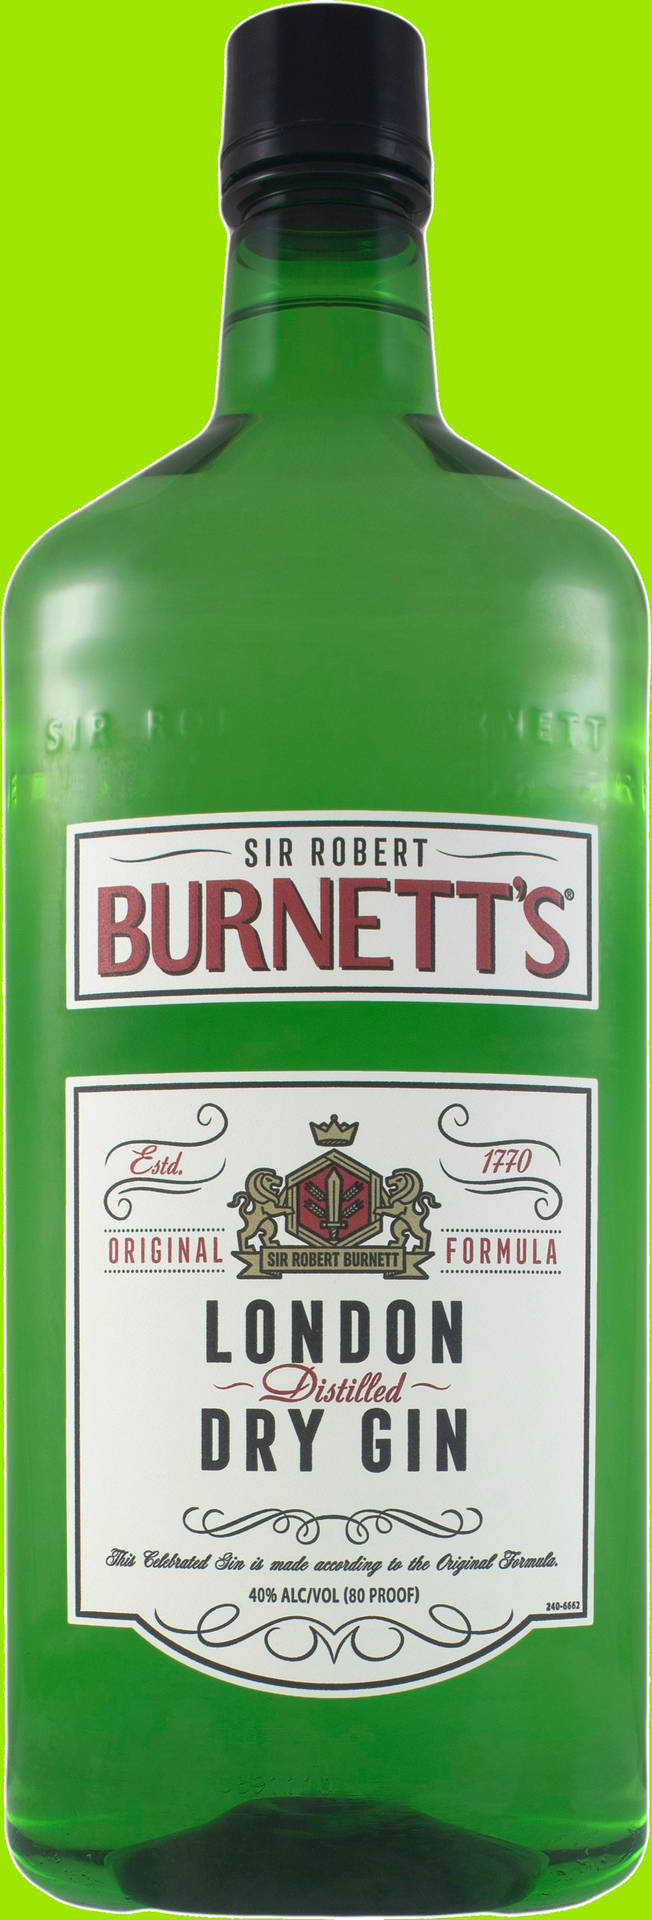 Burnett's London Dry Gin Green Background Wallpaper